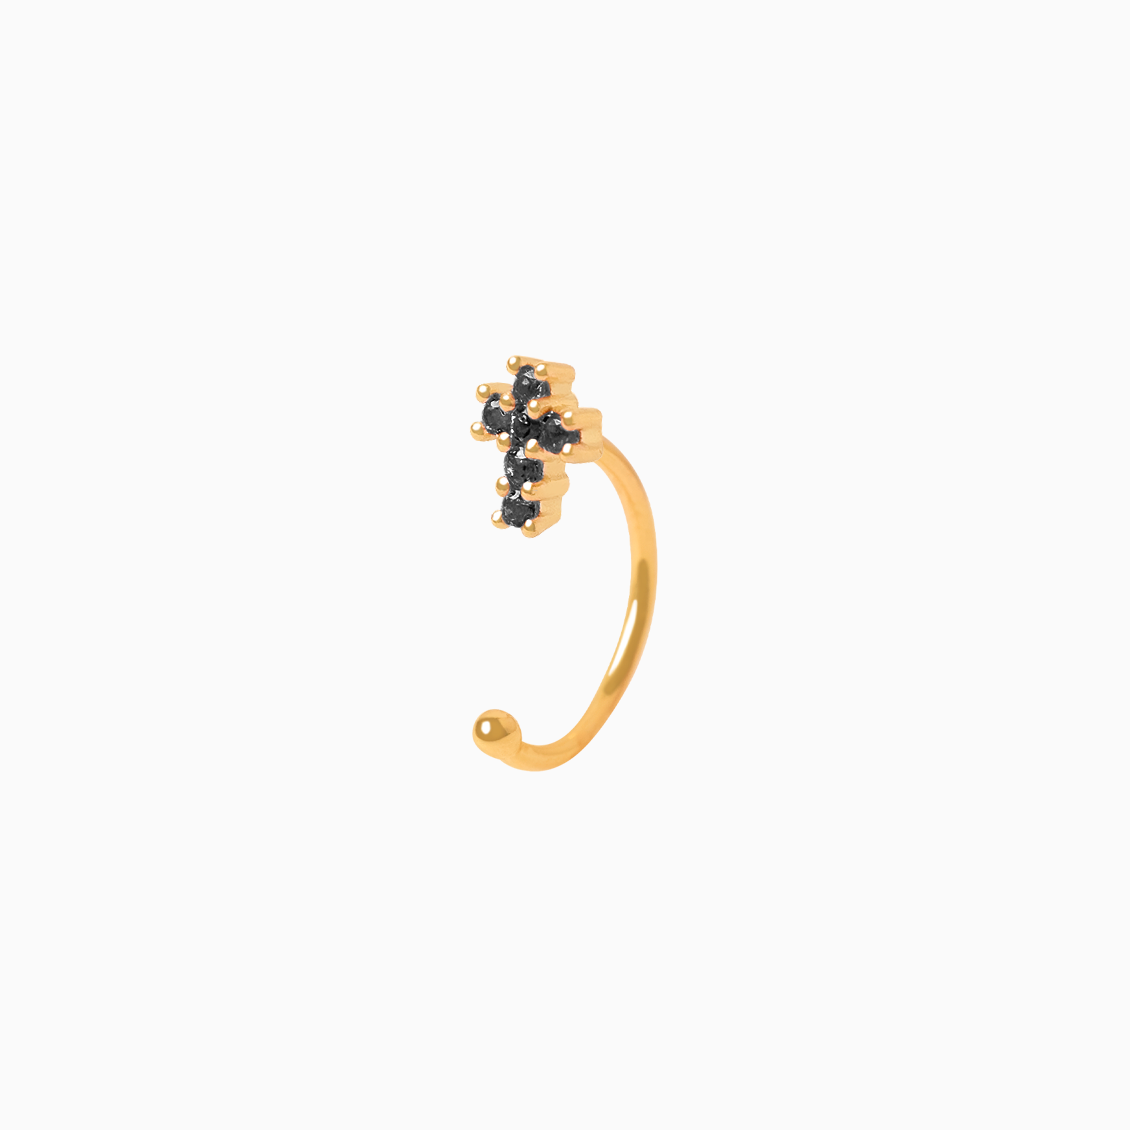 Medio arete en oro amarillo de 18K piercing cruz con brillantes negros